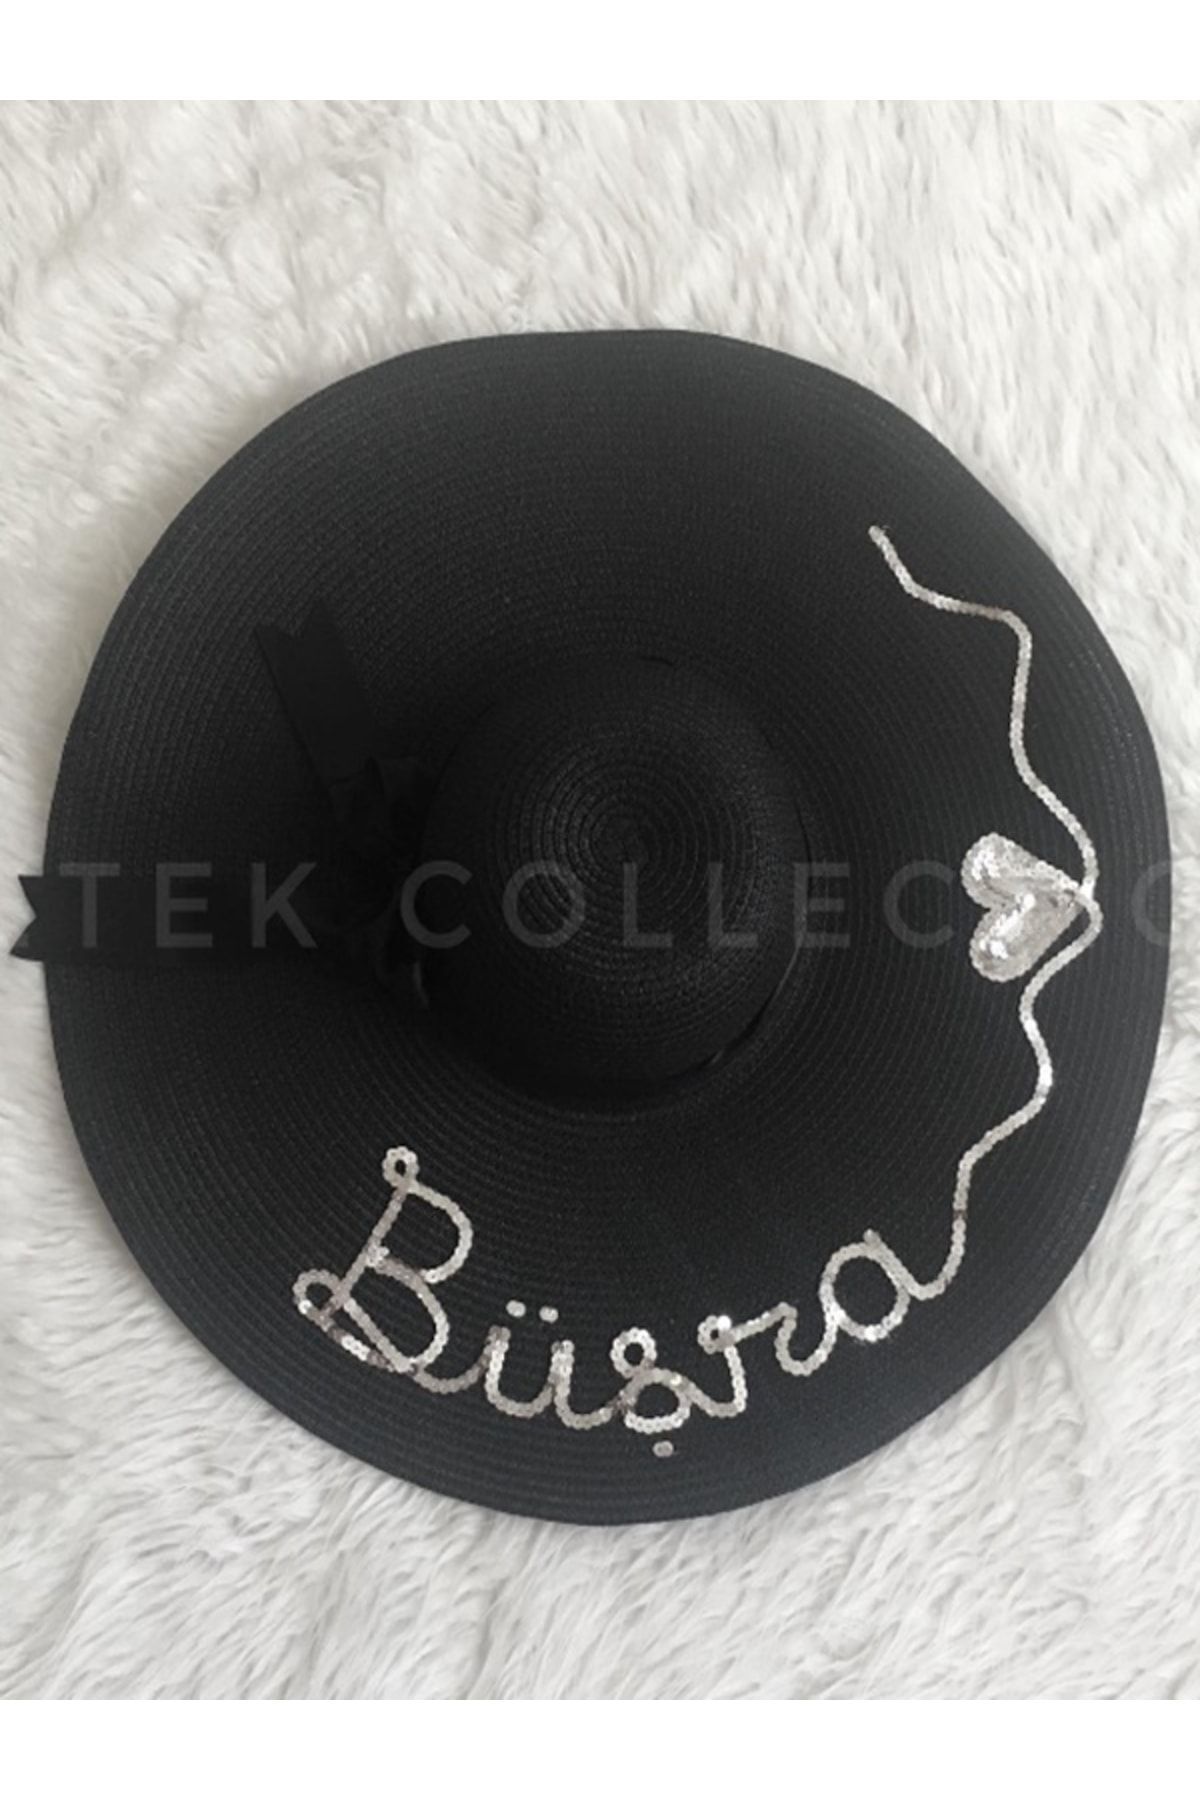 Petek Collection Kişiye Özel Tasarım Isimli Kalpli Siyah Hasır Şapka (YAZILACAK ISMİ SORU KISMINA BELİRTİNİZ)